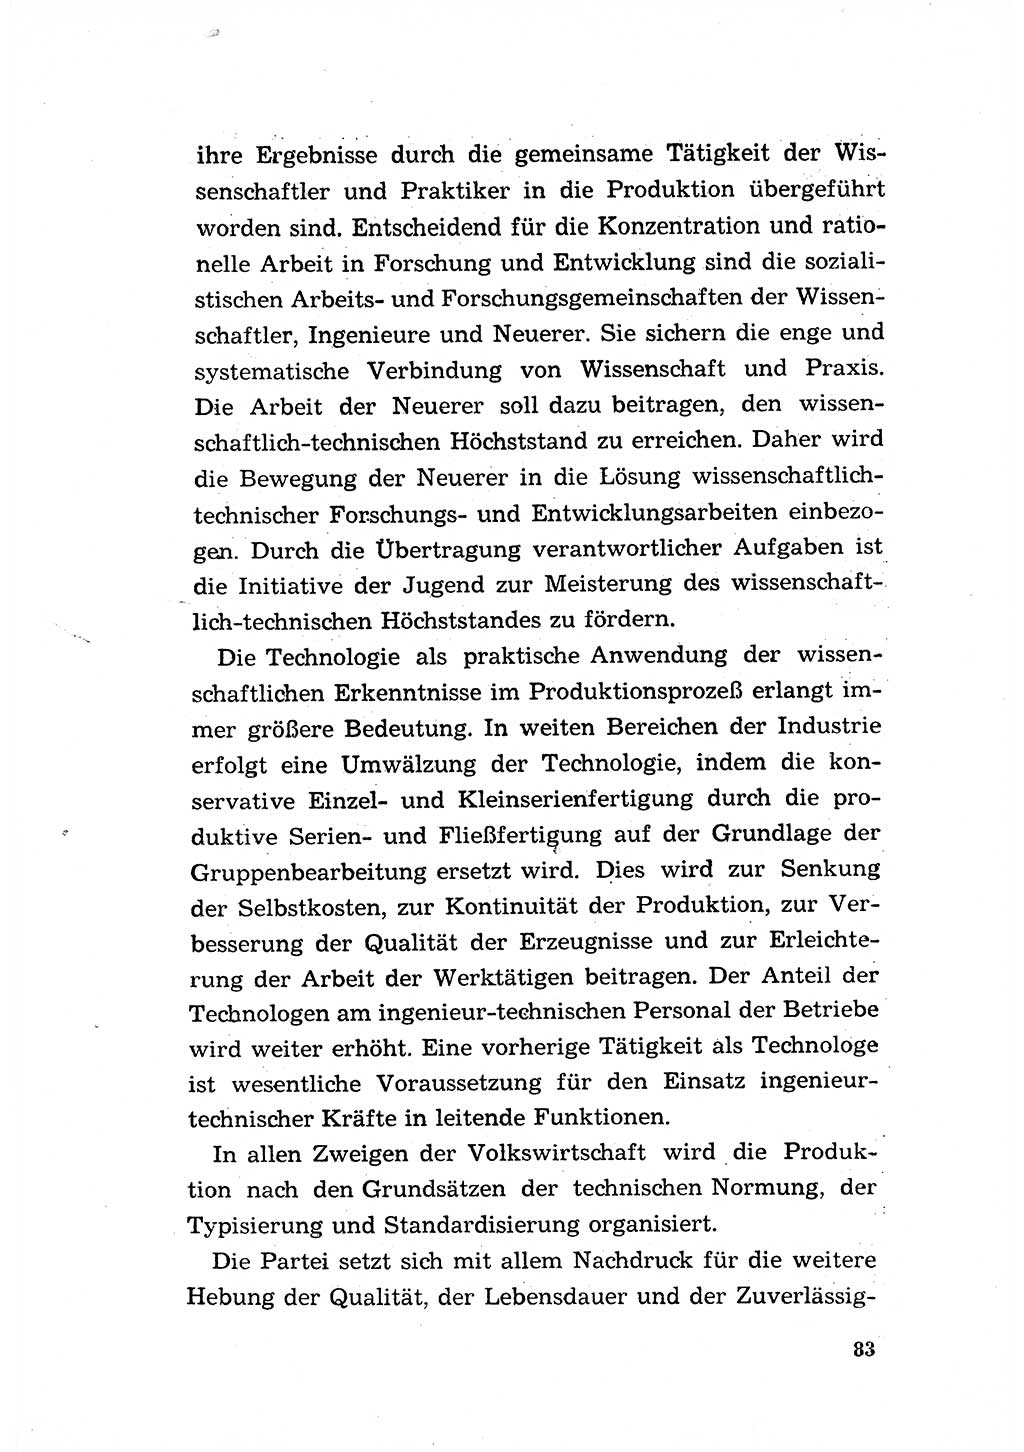 Programm der Sozialistischen Einheitspartei Deutschlands (SED) [Deutsche Demokratische Republik (DDR)] 1963, Seite 83 (Progr. SED DDR 1963, S. 83)